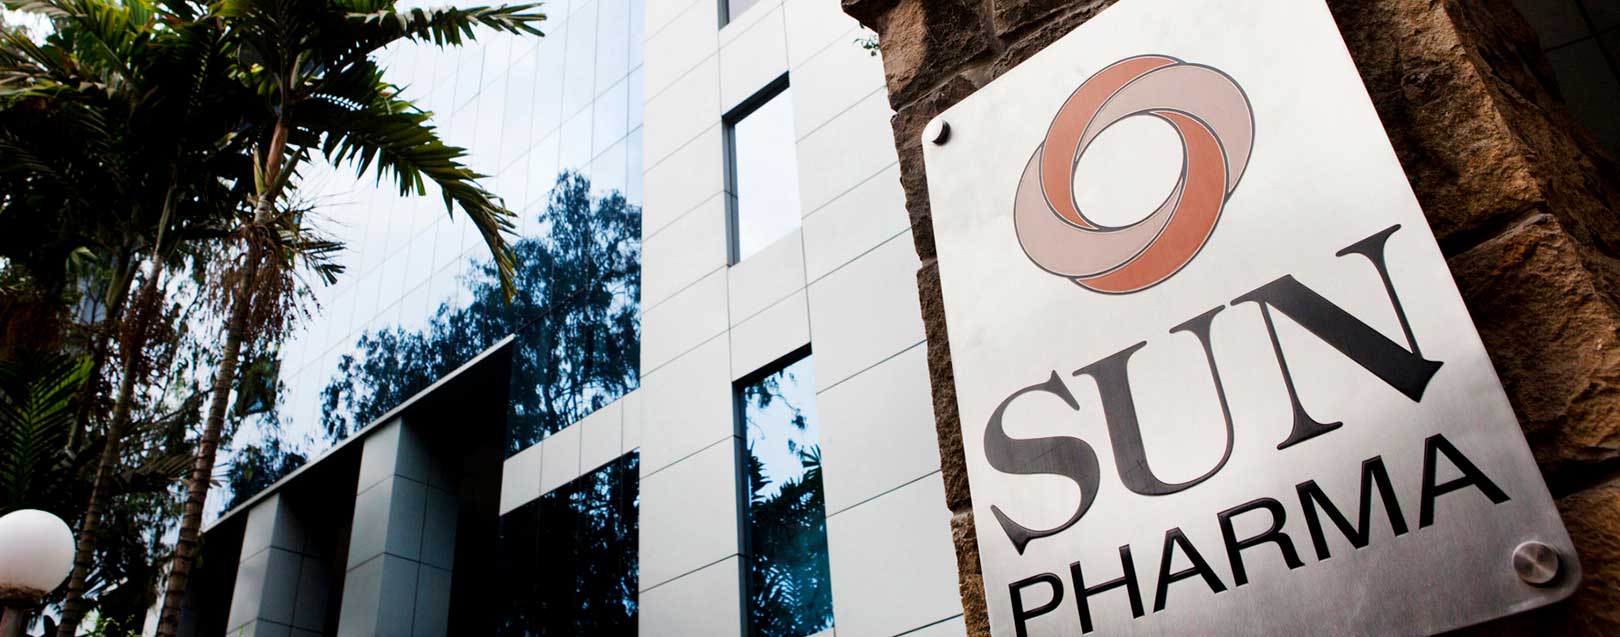 Sun Pharma signs $50 million deal with Spanish firm